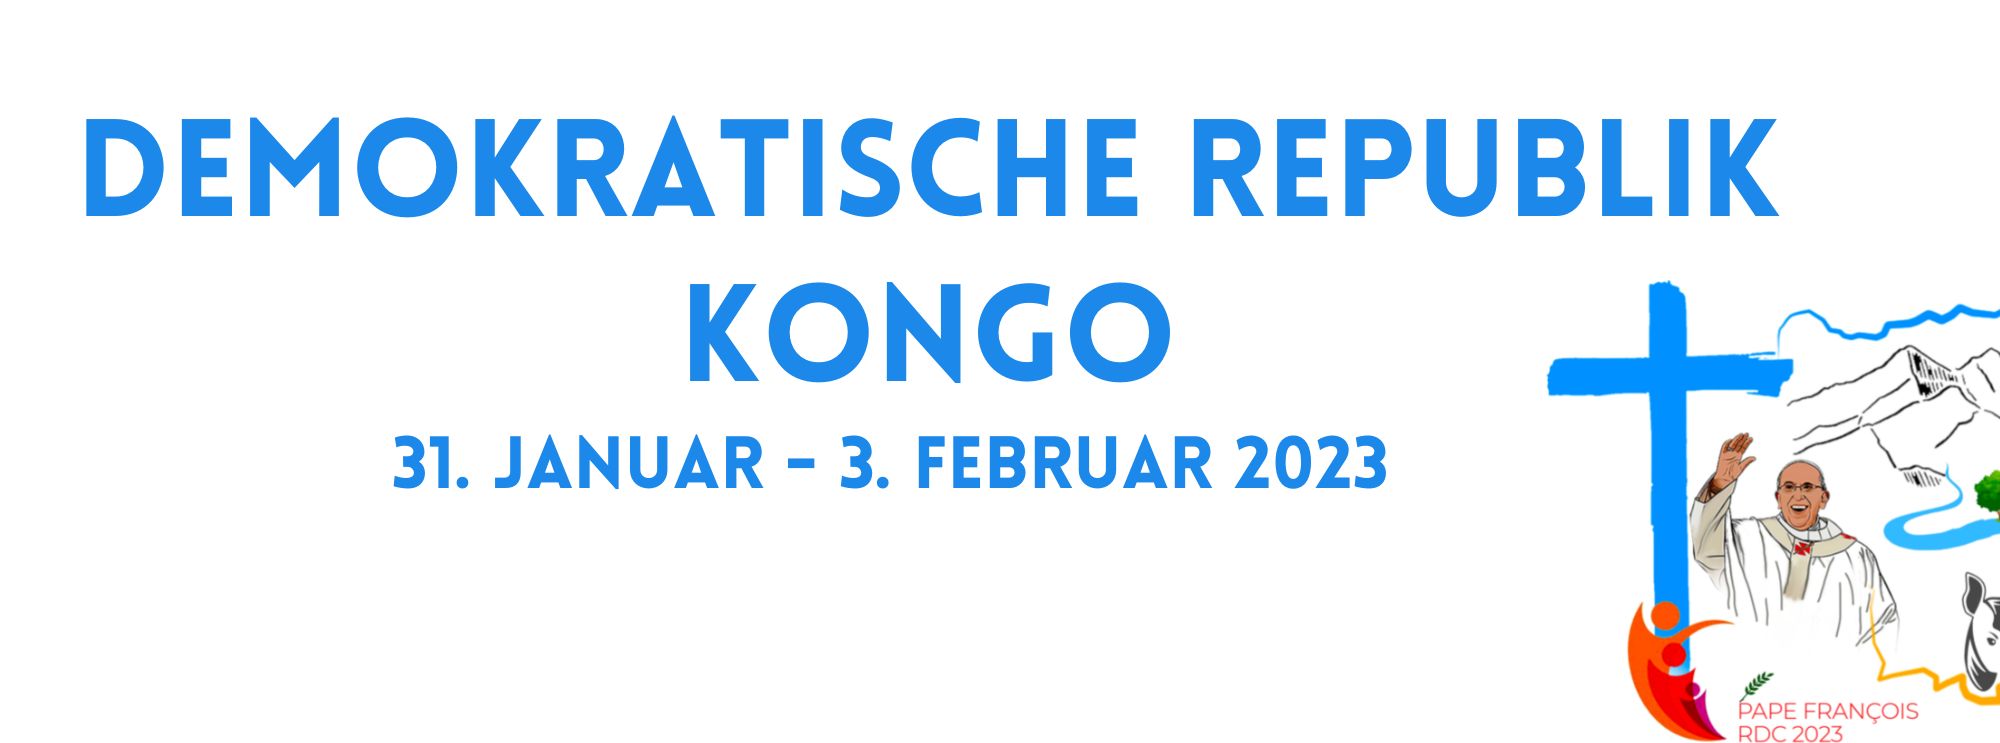 Apostolische Reise von Papst Franziskus in die Demokratische Republik Kongo und den Südsudan (31. Januar - 5. Februar 2023)